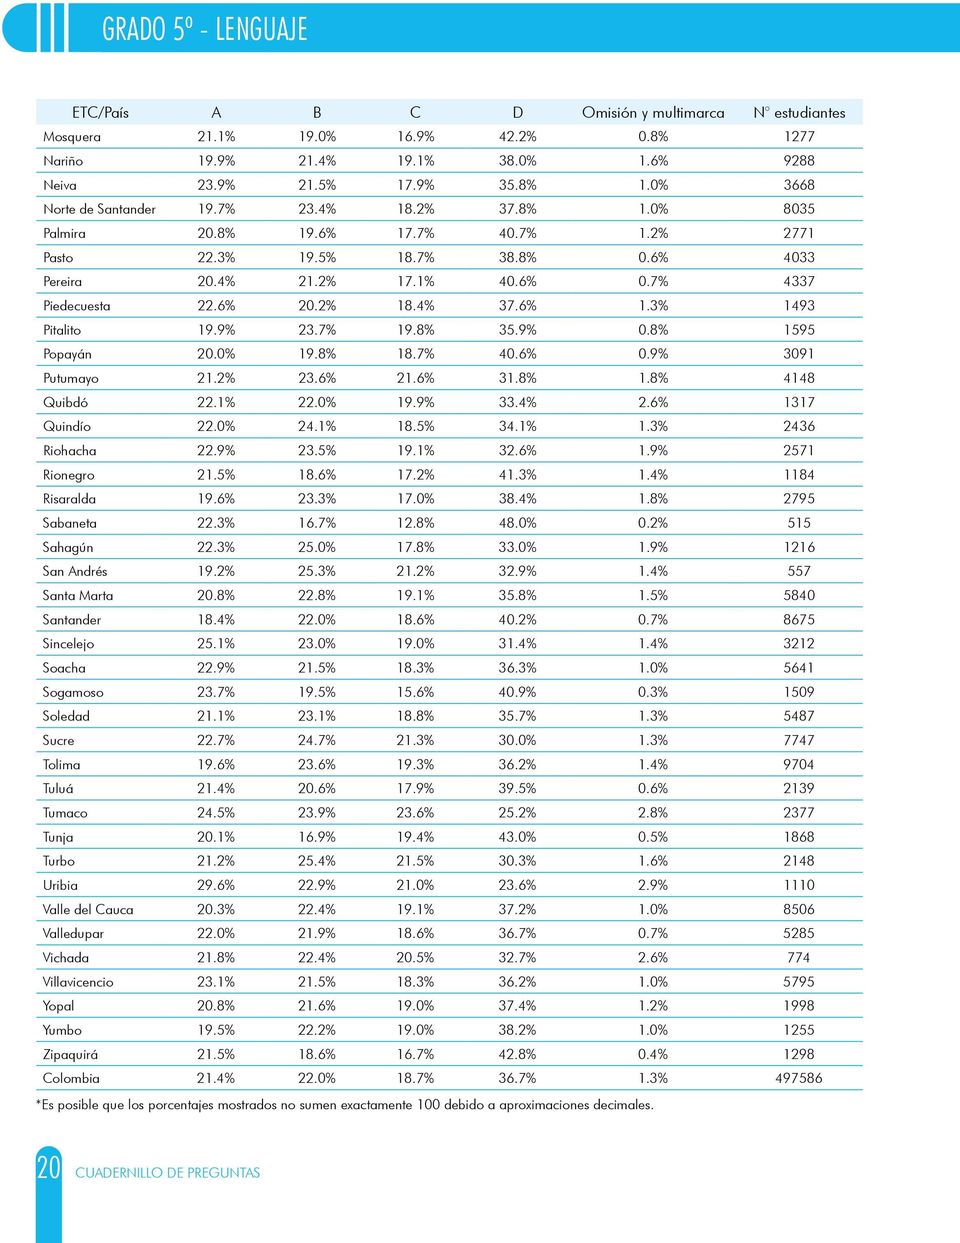 8% 1595 Popayán 20.0% 19.8% 18.7% 40.6% 0.9% 3091 Putumayo 21.2% 23.6% 21.6% 31.8% 1.8% 4148 Quibdó 22.1% 22.0% 19.9% 33.4% 2.6% 1317 Quindío 22.0% 24.1% 18.5% 34.1% 1.3% 2436 Riohacha 22.9% 23.5% 19.